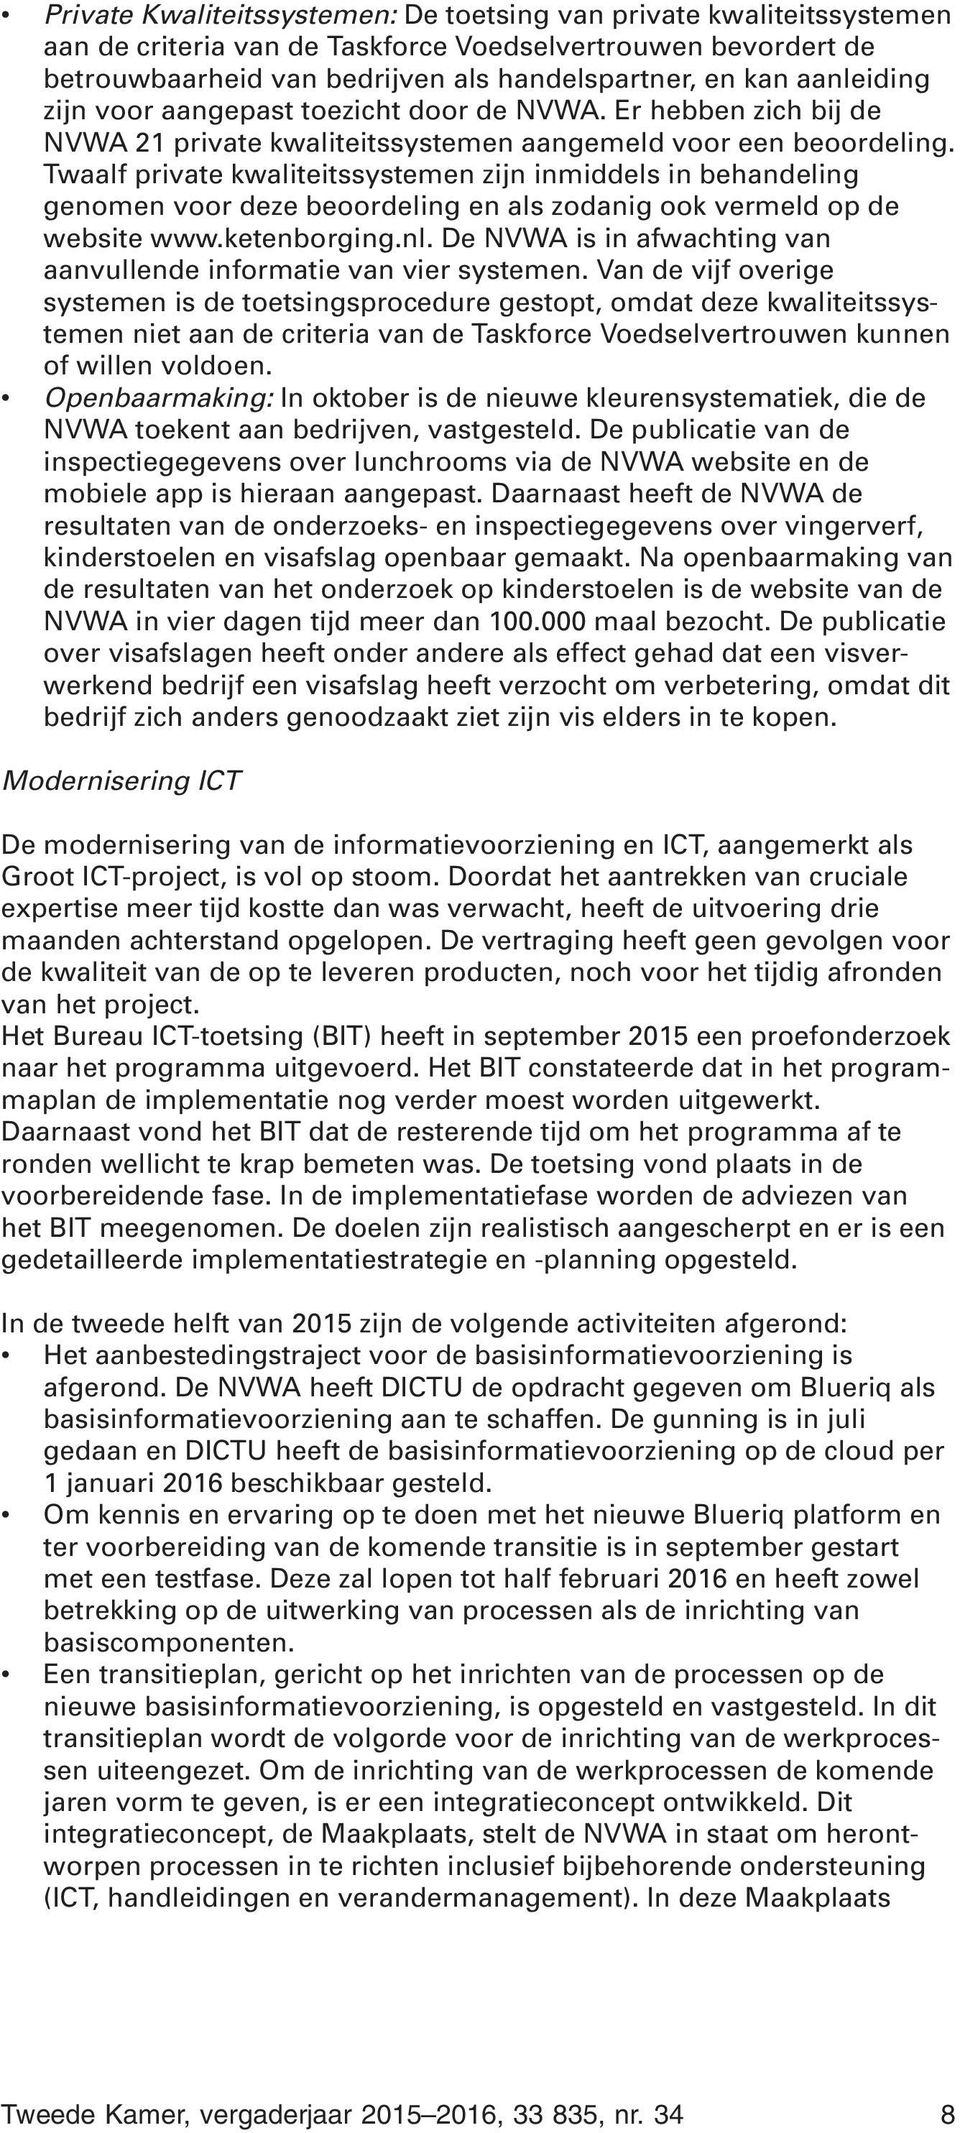 Twaalf private kwaliteitssystemen zijn inmiddels in behandeling genomen voor deze beoordeling en als zodanig ook vermeld op de website www.ketenborging.nl.